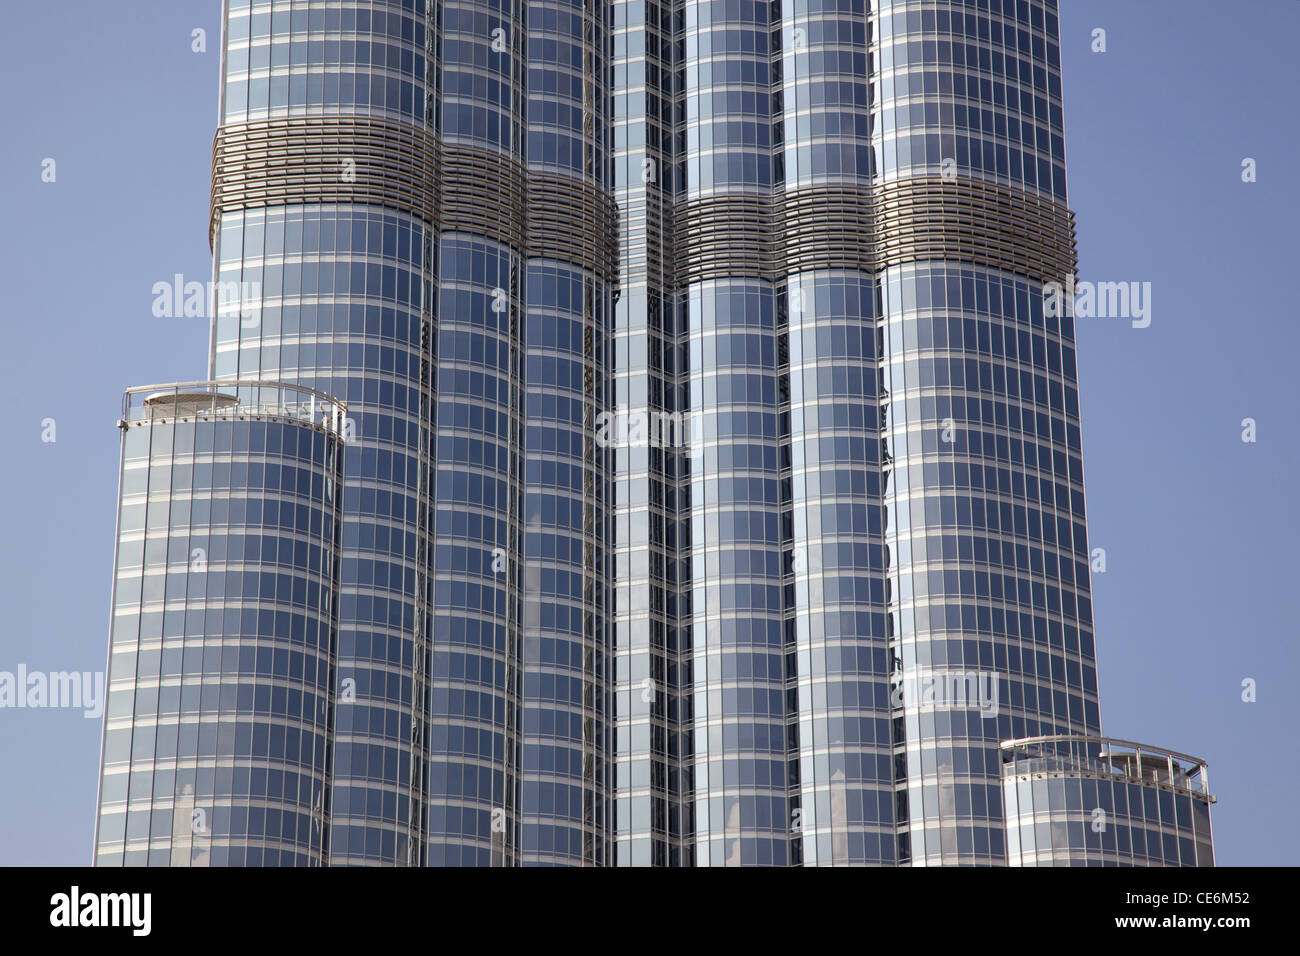 Dettaglio astratto di Burj Khalifa, il mondo il più alto edificio, situato a Dubai negli Emirati Arabi Uniti. Foto Stock